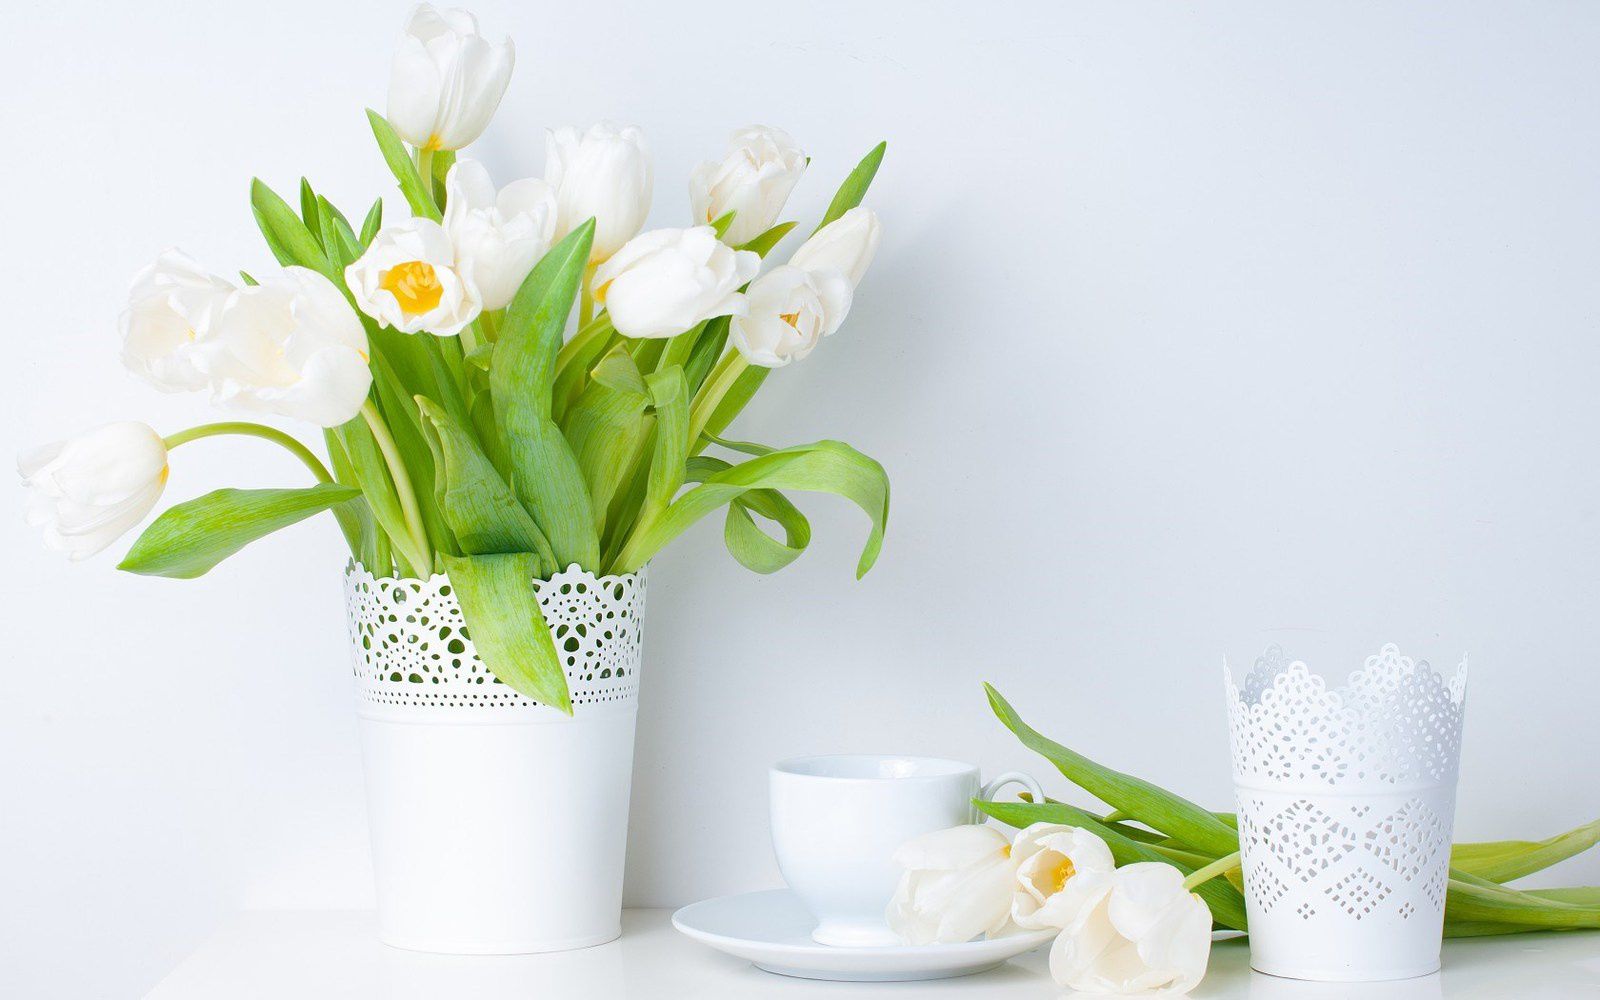 Décoration - Fleurs - Vase - Tulipes - Blanc - Photographie - Wallpaper - Free